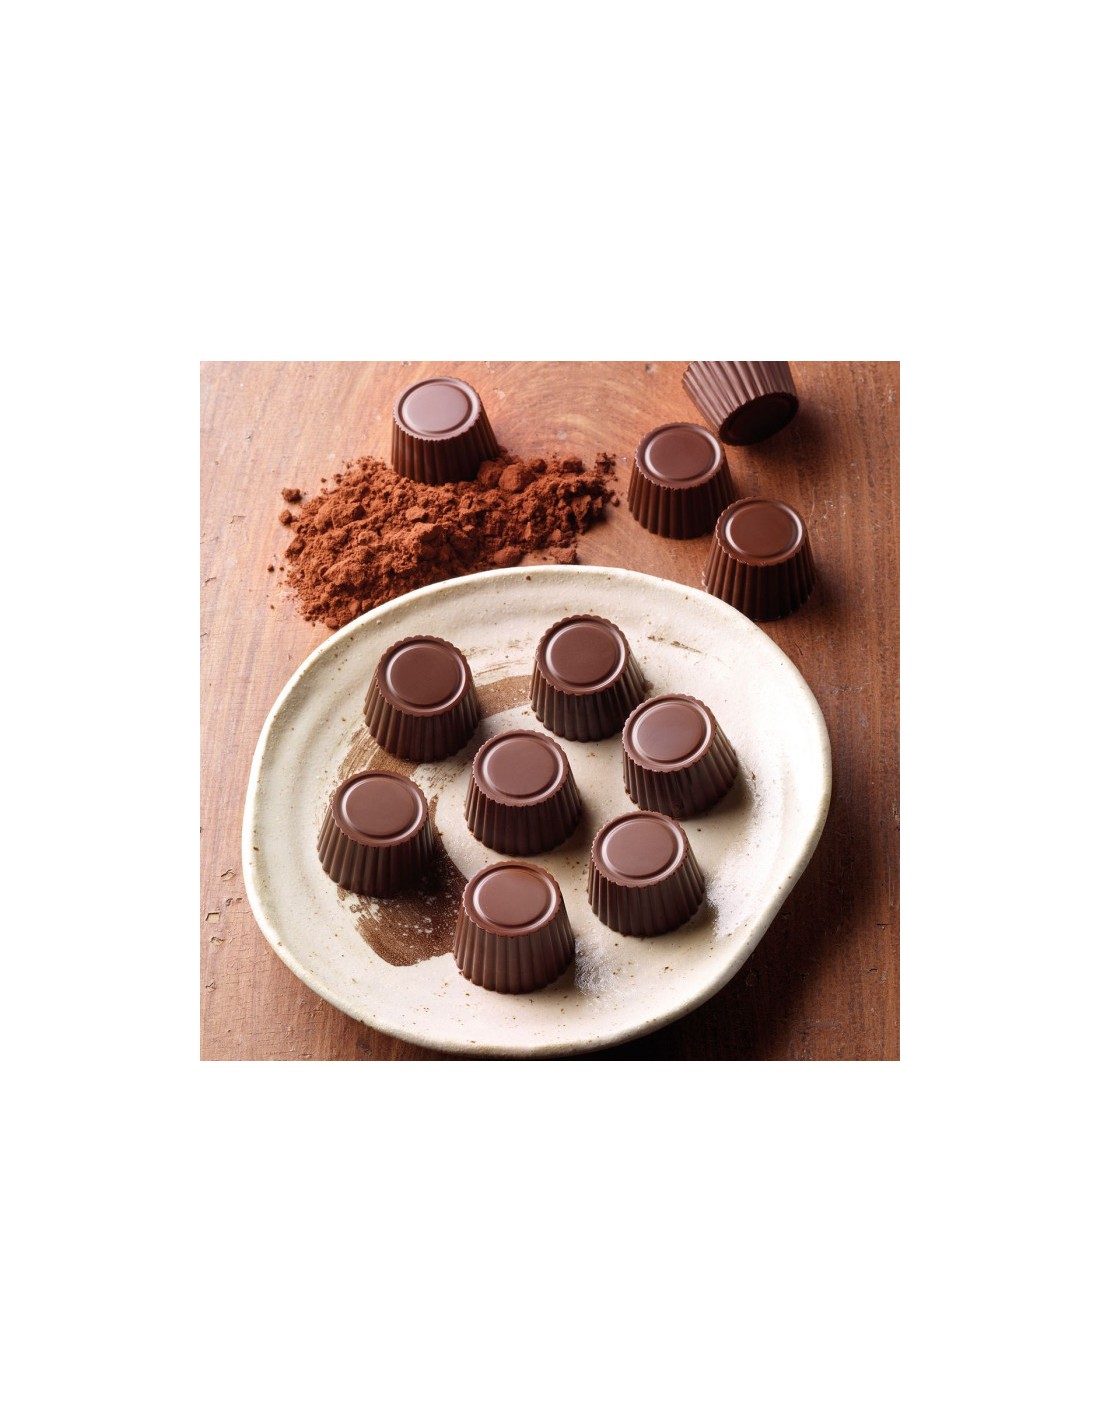 Stampo in silicone per cioccolatini PRALINE